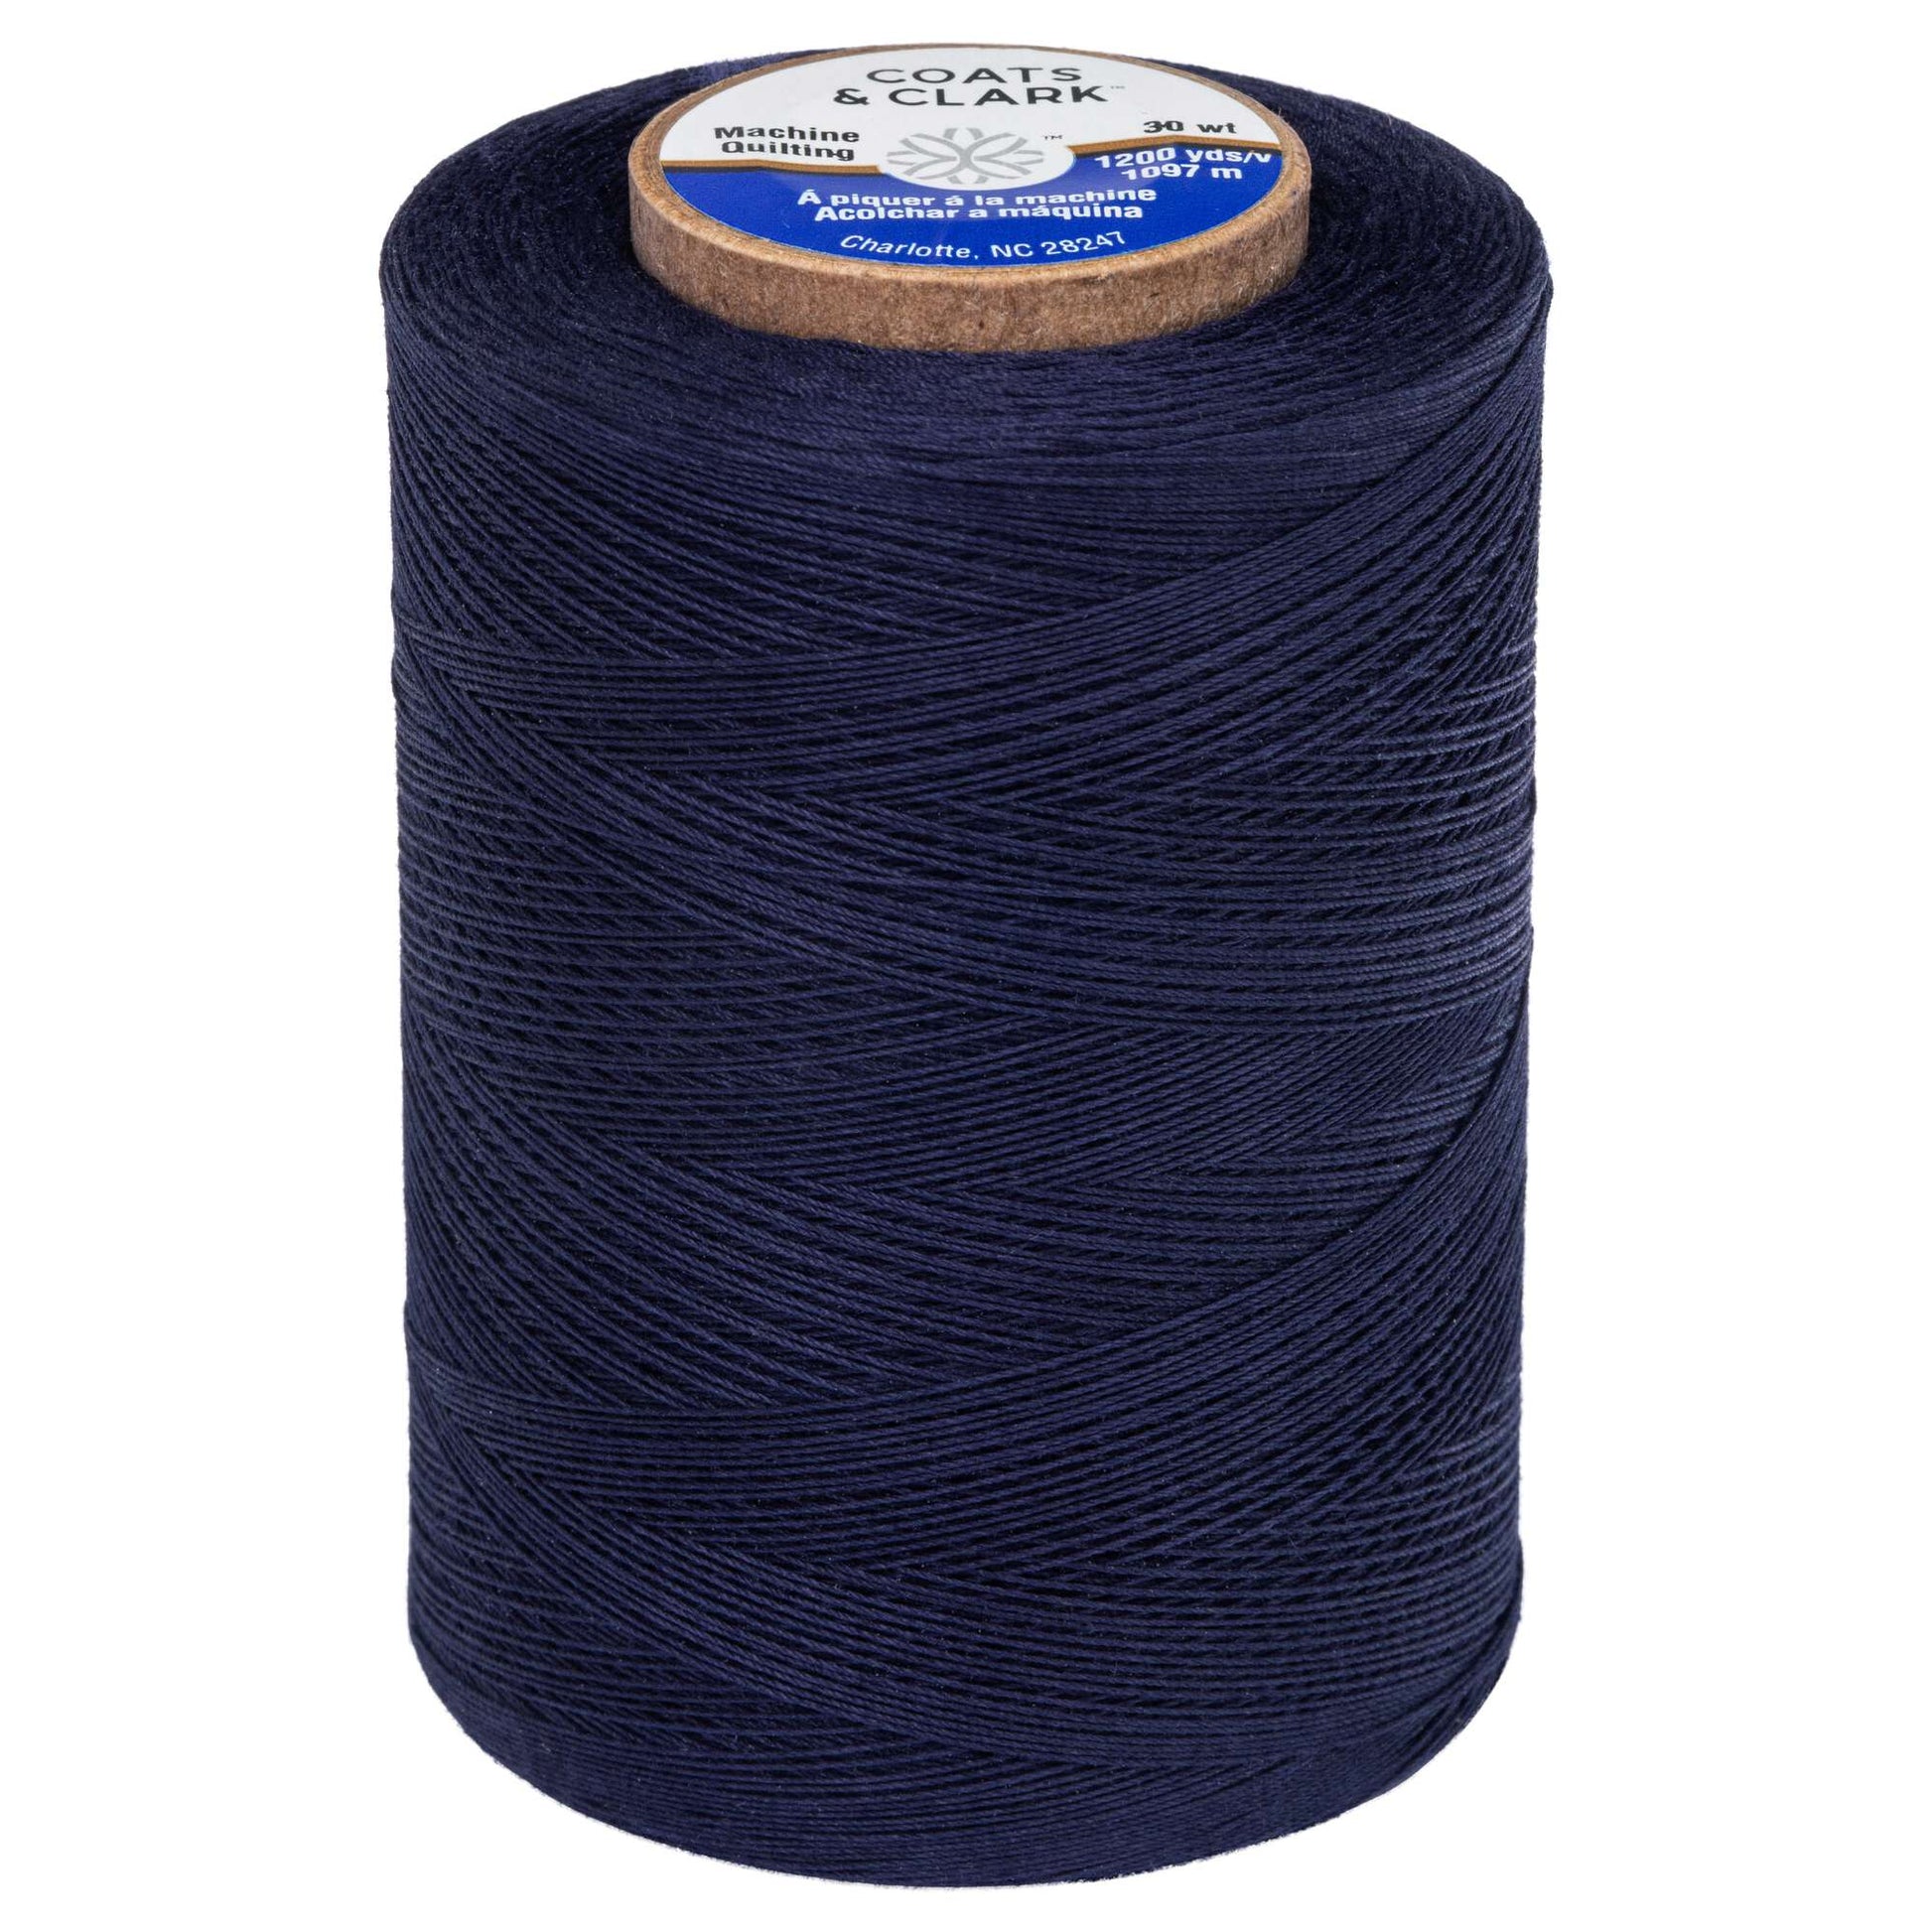 Coats & Clark Cotton Machine Quilting Thread (1200 Yards) Navy